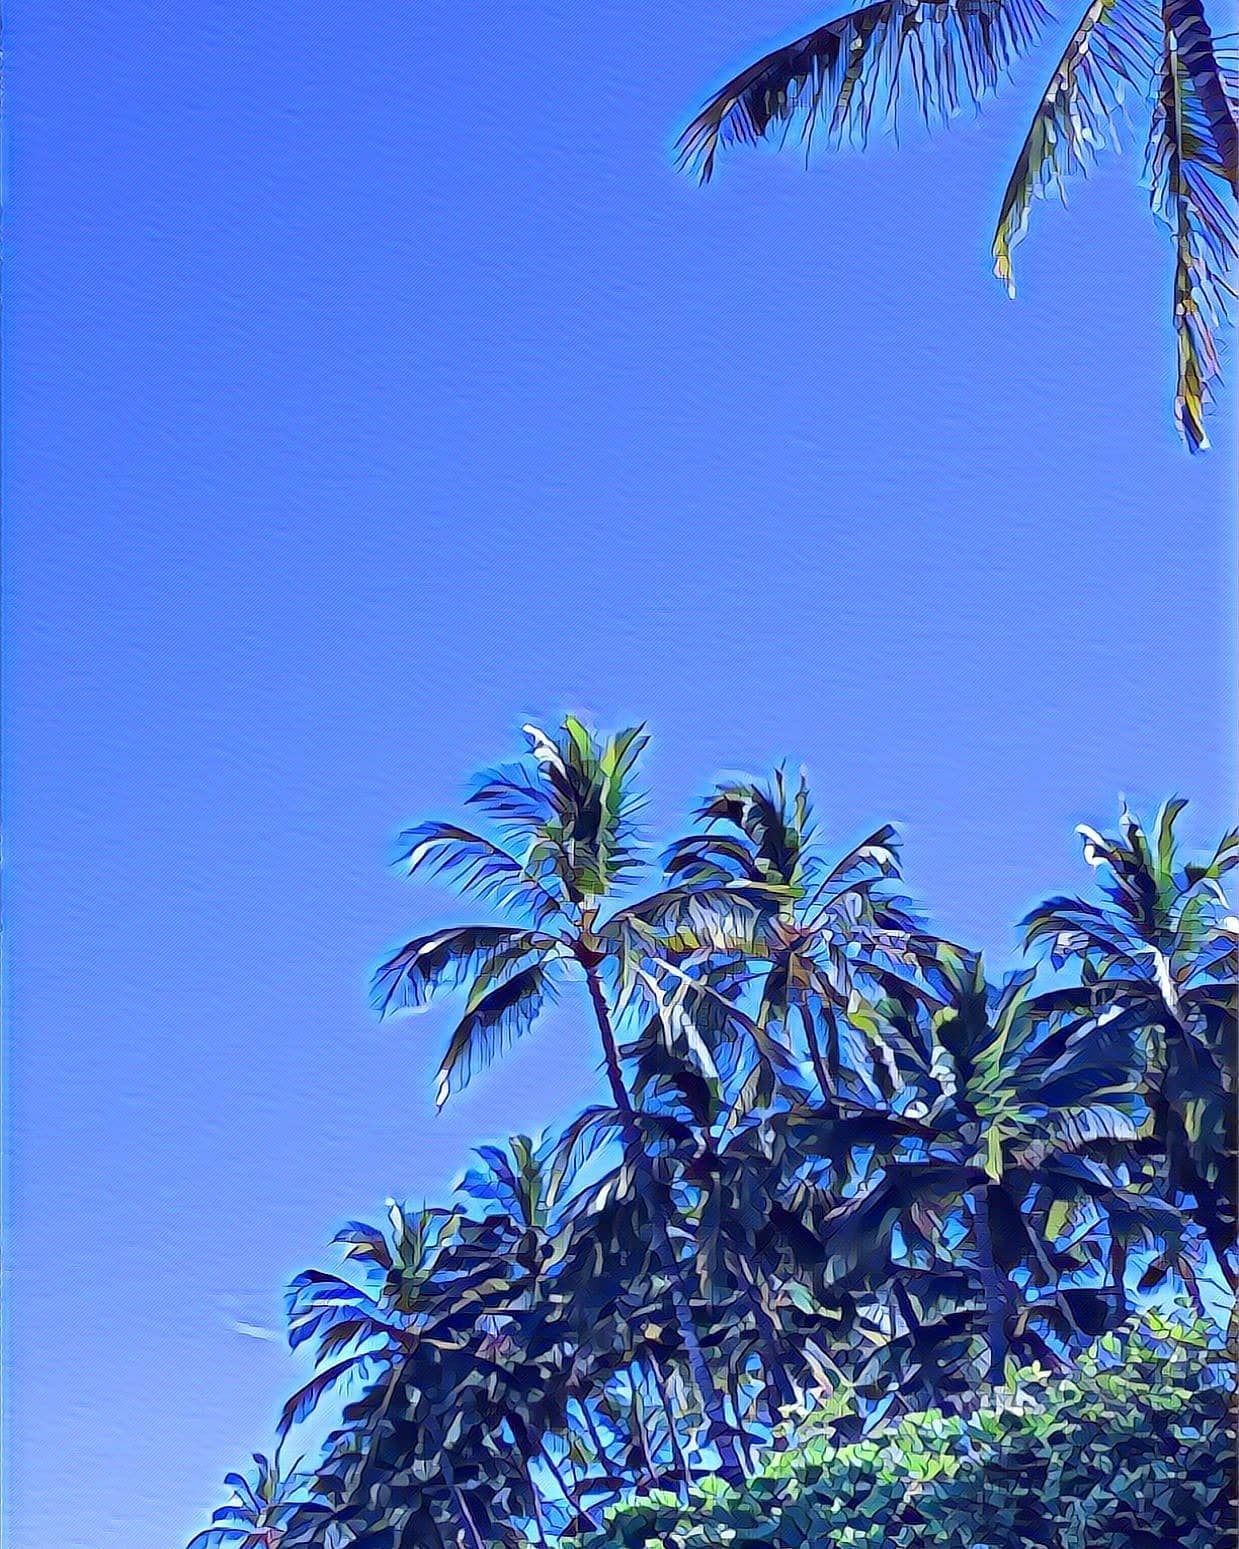 Palm trees on a sunny Blue Sky day 🌴💙
🌴
🌺
🌅
⛳
Jill McGowan ~ Maui Realtor
808.658.0575
Jill@LuxuryHomesMaui.com
🌈
🌊
😎
#Uluabeach #Wailea #Kihei #Hawaii #Makena #Maalaea #Maluaka #mauimeadows #Lahaina #Kapalua #oceanfrontproperty #mauilifestyle #luxuryhomes #luxurycondos #movingtomaui #beachfrontproperty #mauirealestate #mauirealtor #luxuryhomesMaui #mauicondos #mauihomes